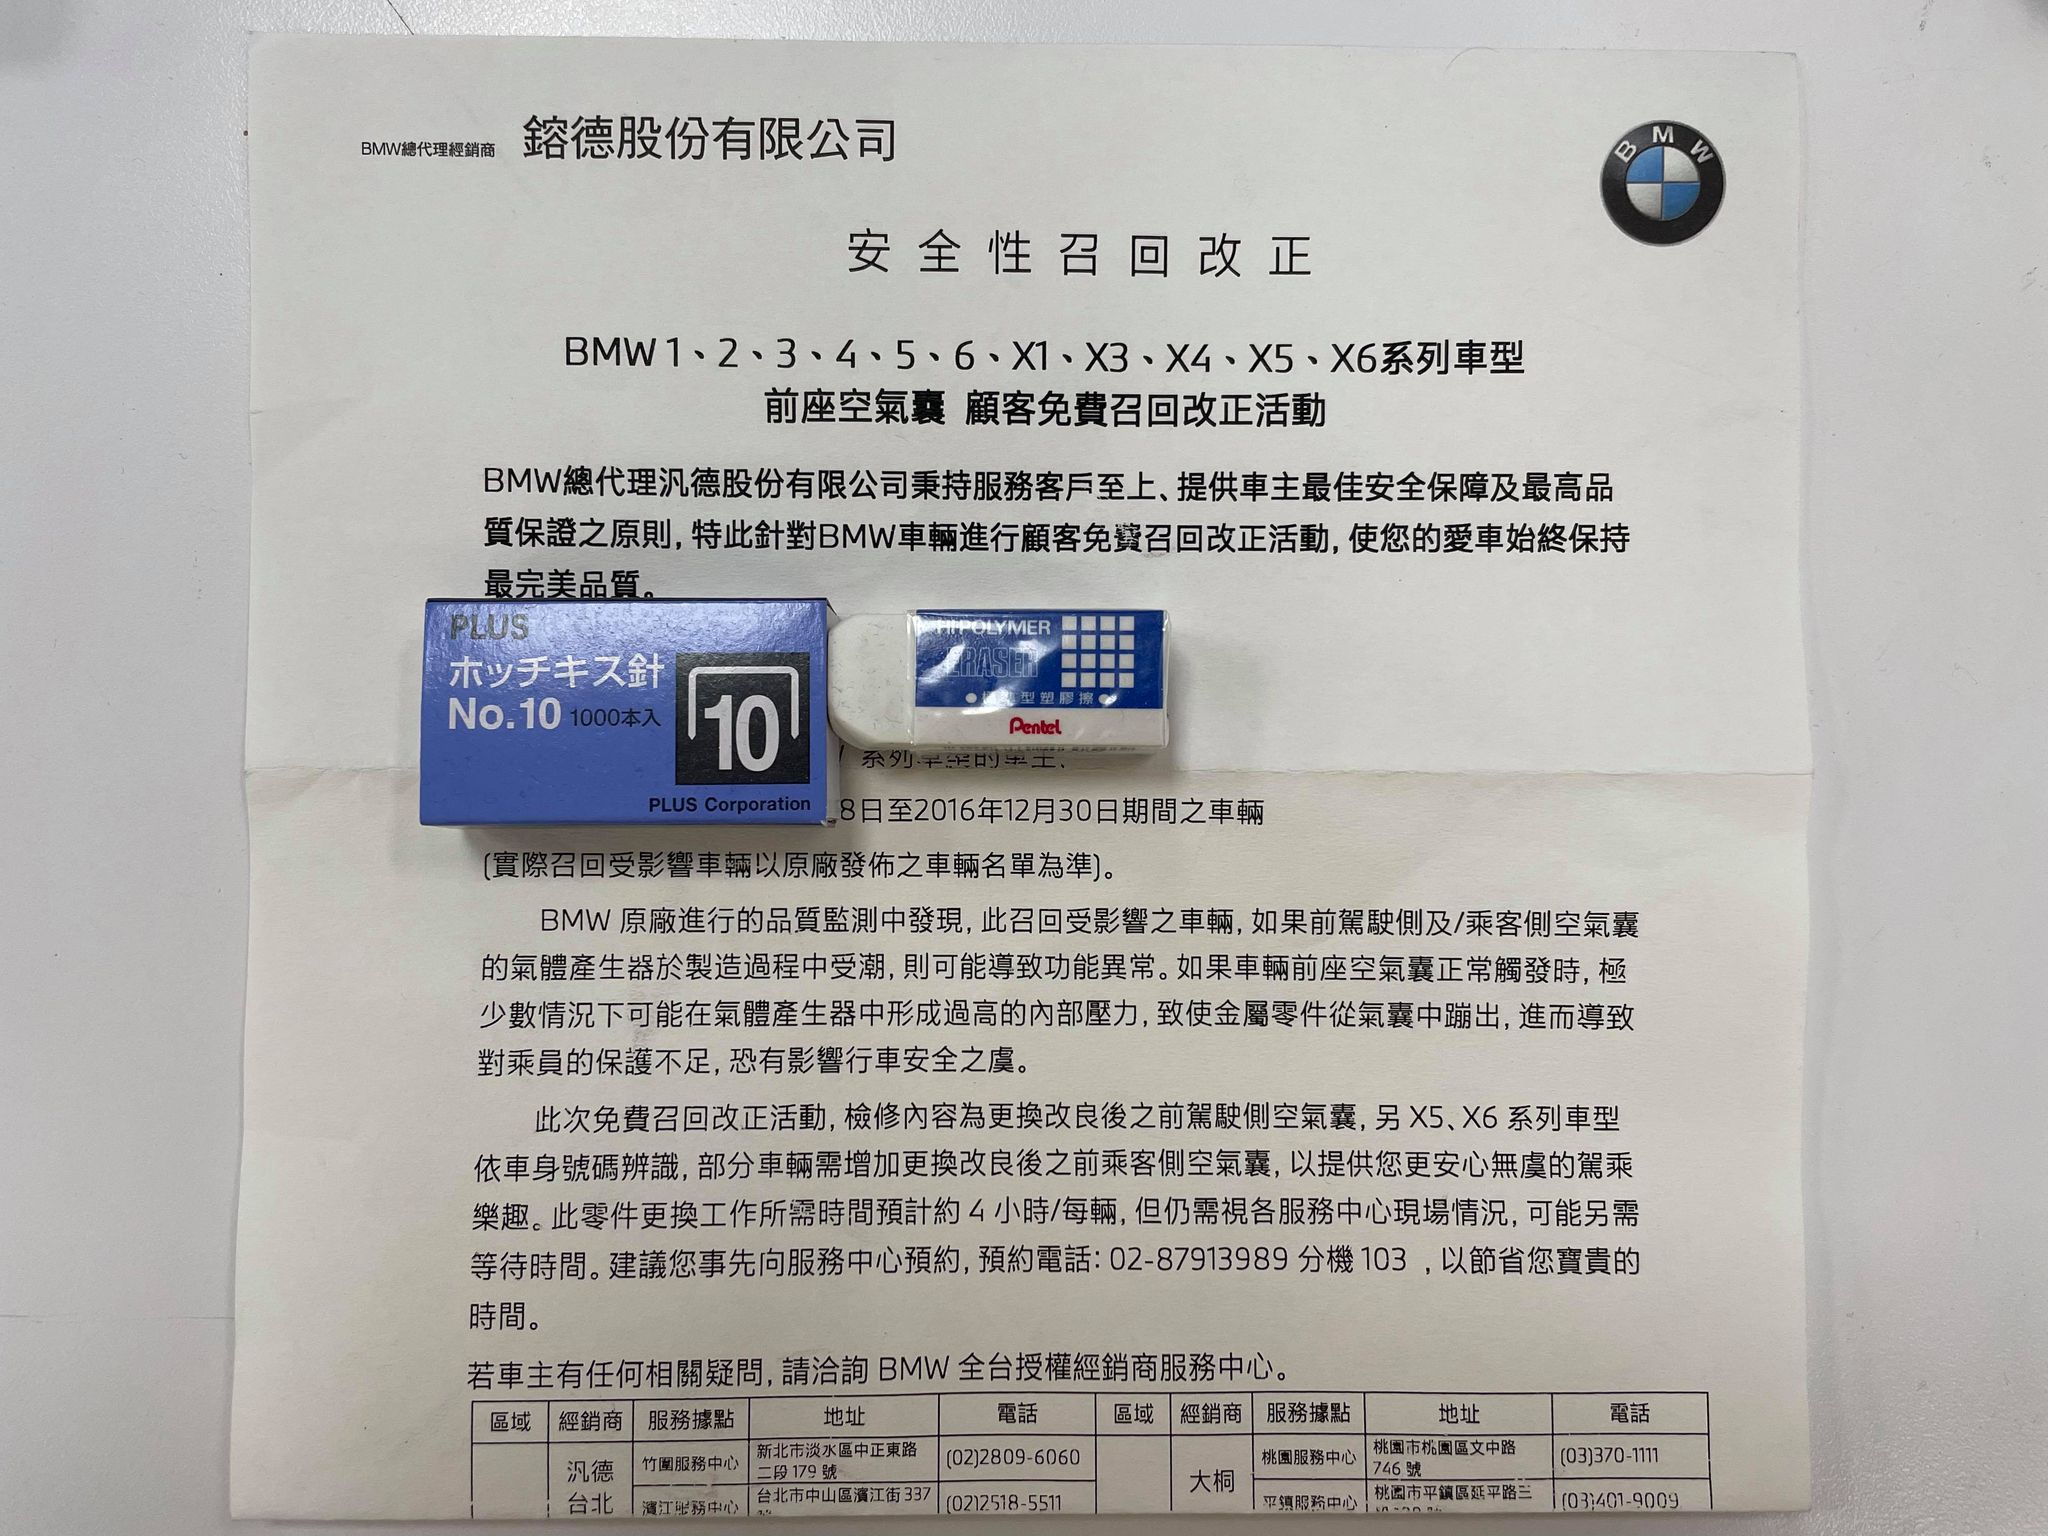 BMW於9/28對車主發出安全性召回通知書。(圖片來源/ TVBS )